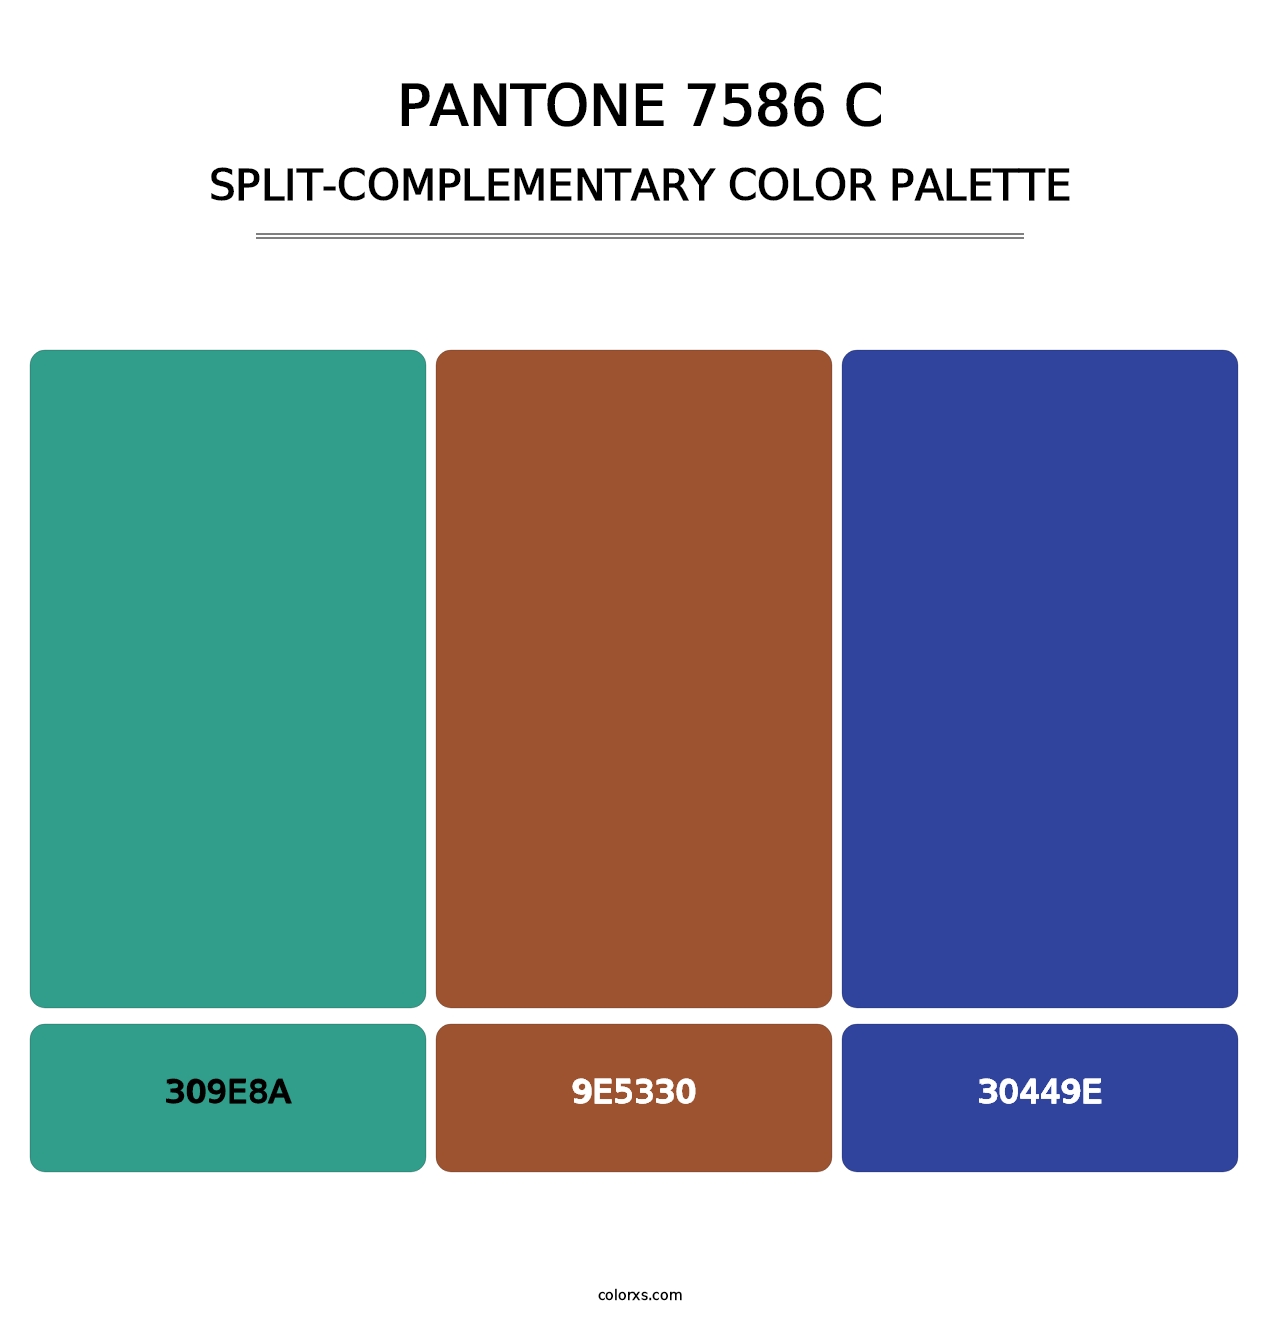 PANTONE 7586 C - Split-Complementary Color Palette